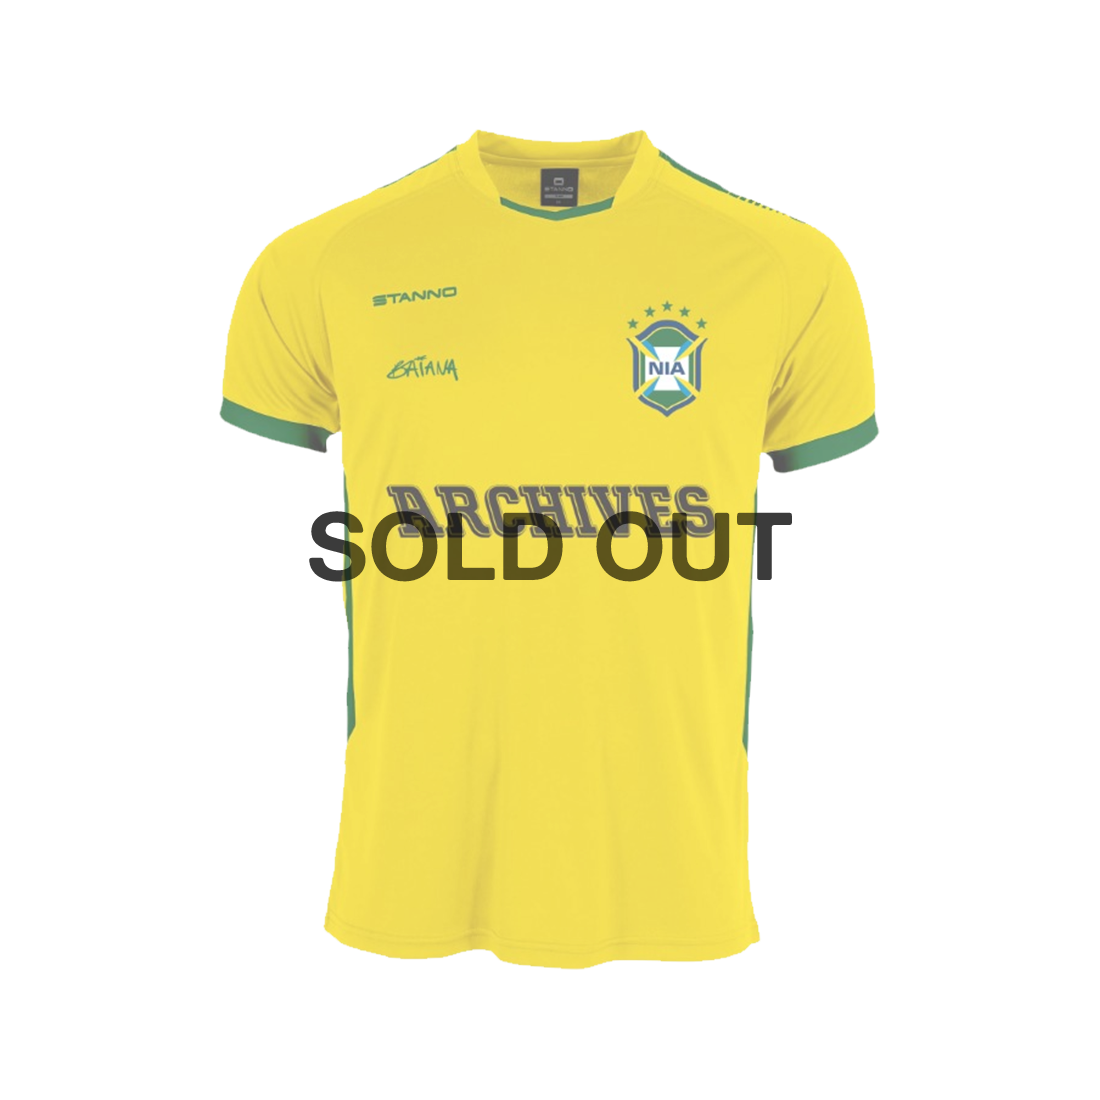 Nia Archives - Yellow Short-Sleeve 'Baiana' Football Top